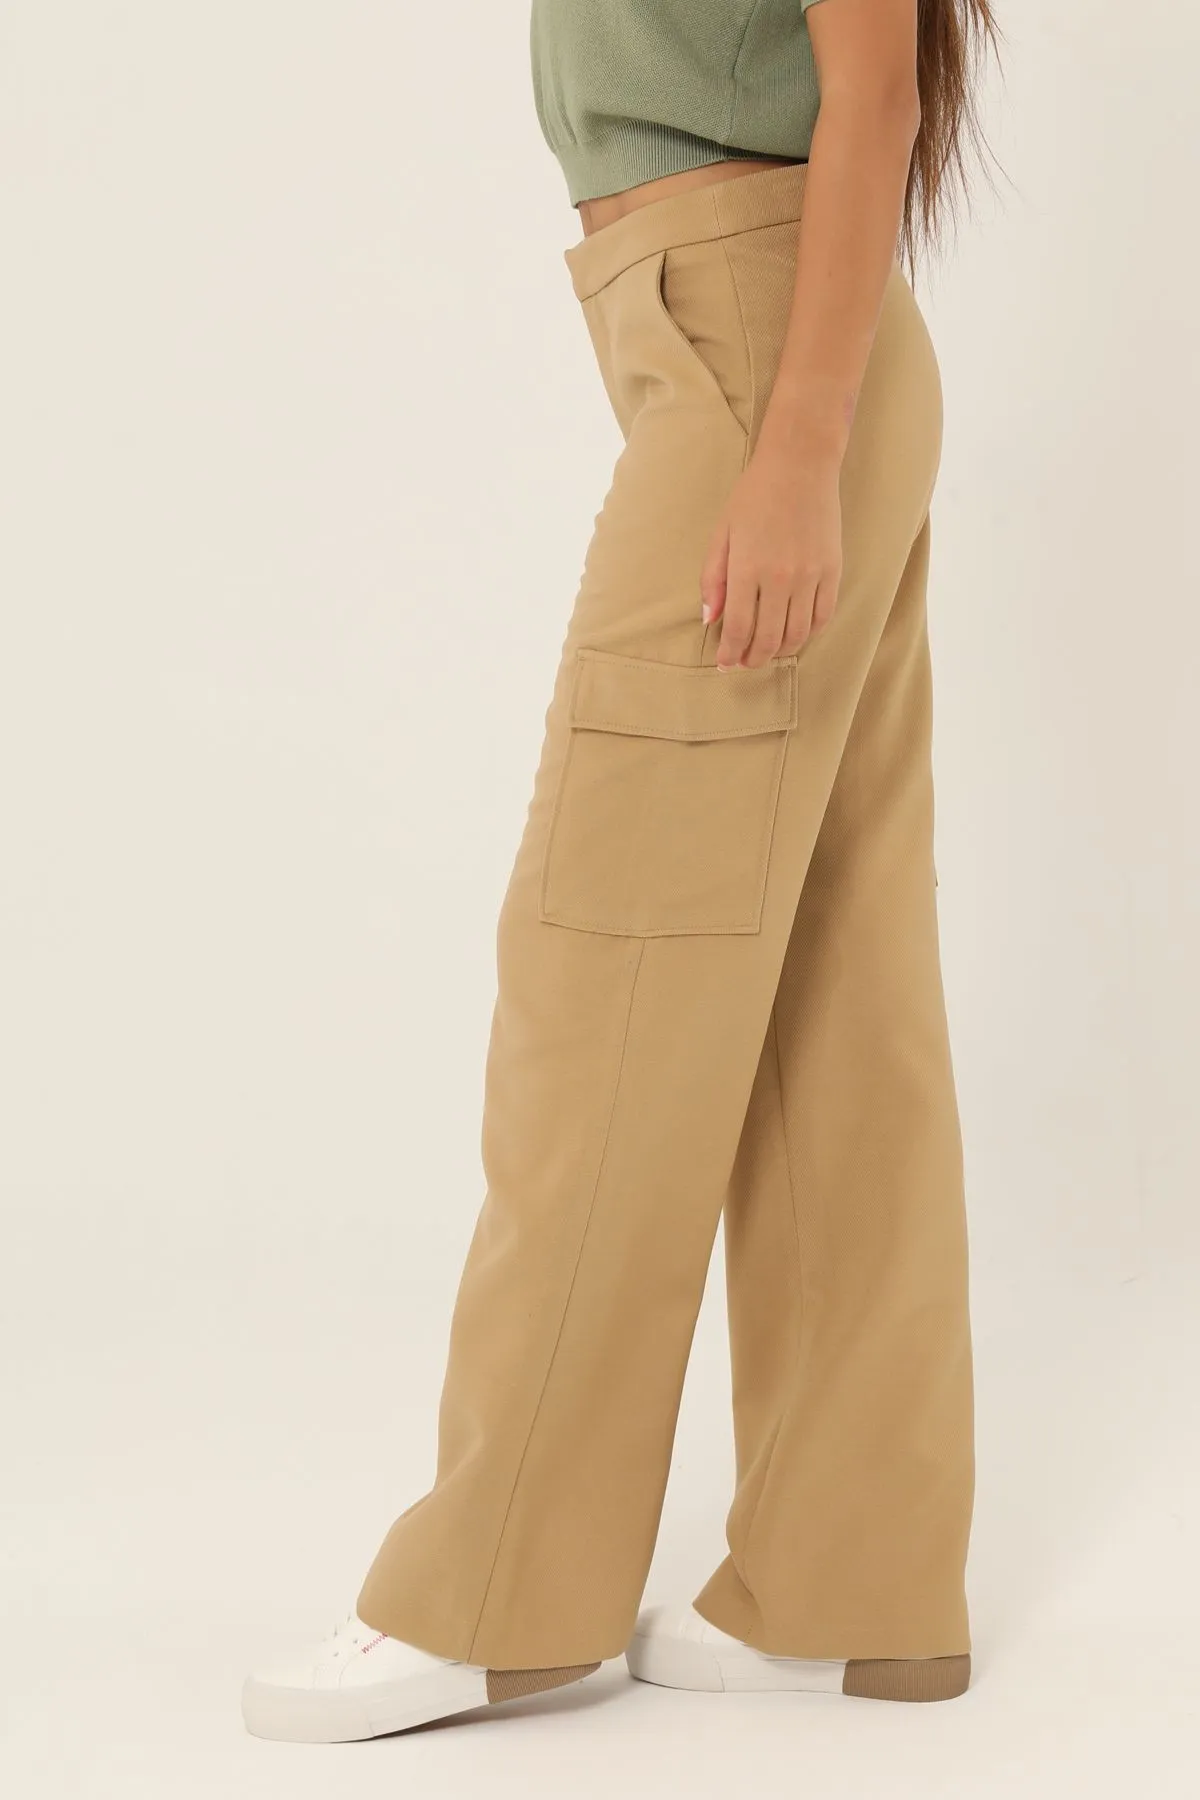 Pantalon cargo femme  Zen, boutique en ligne, Algerie